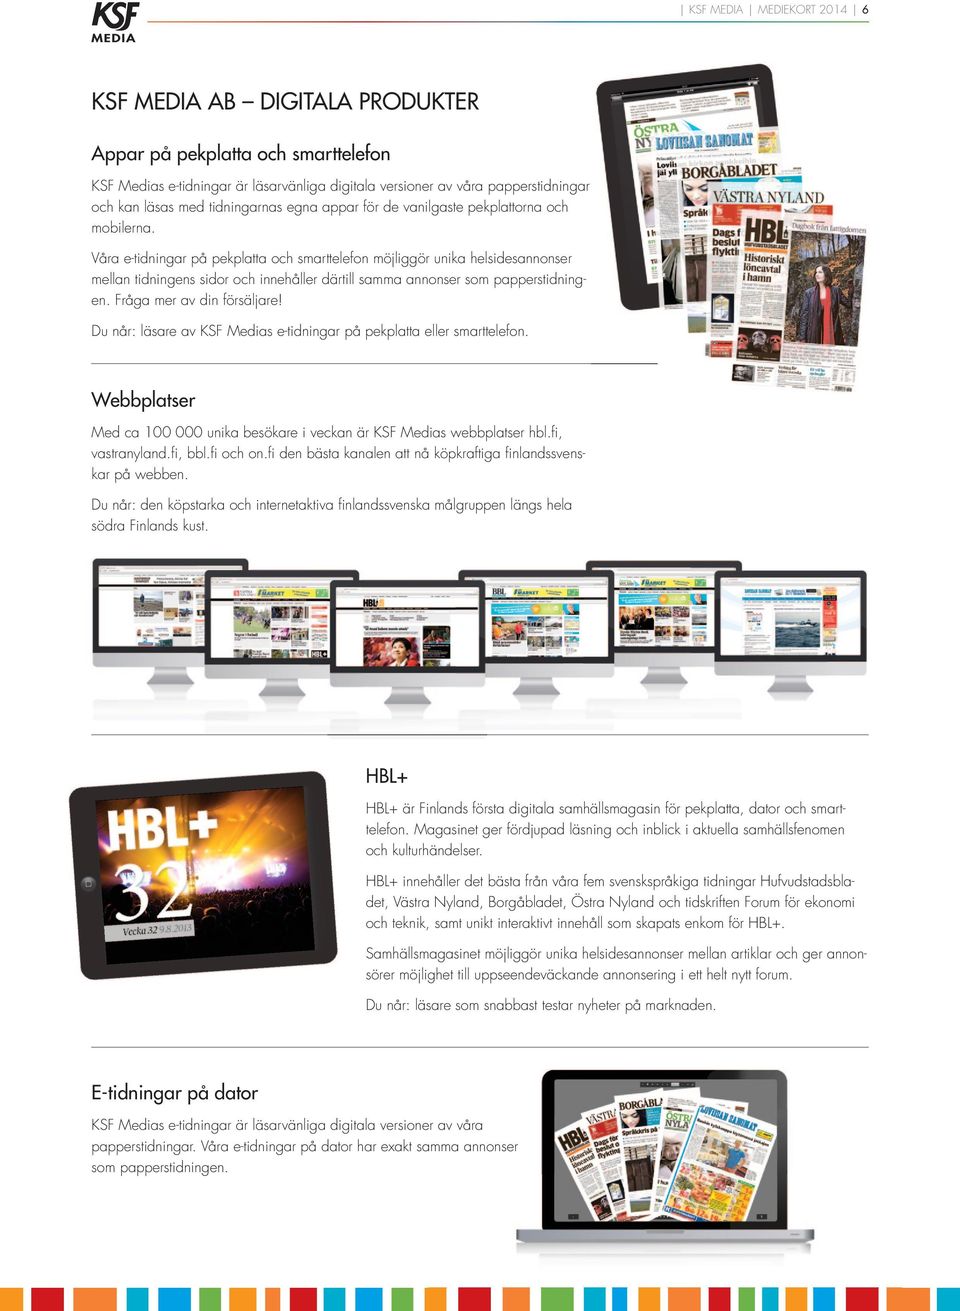 Våra e-tidningar på pekplatta och smarttelefon möjliggör unika helsidesannonser mellan tidningens sidor och innehåller därtill samma annonser som papperstidningen. Fråga mer av din försäljare!